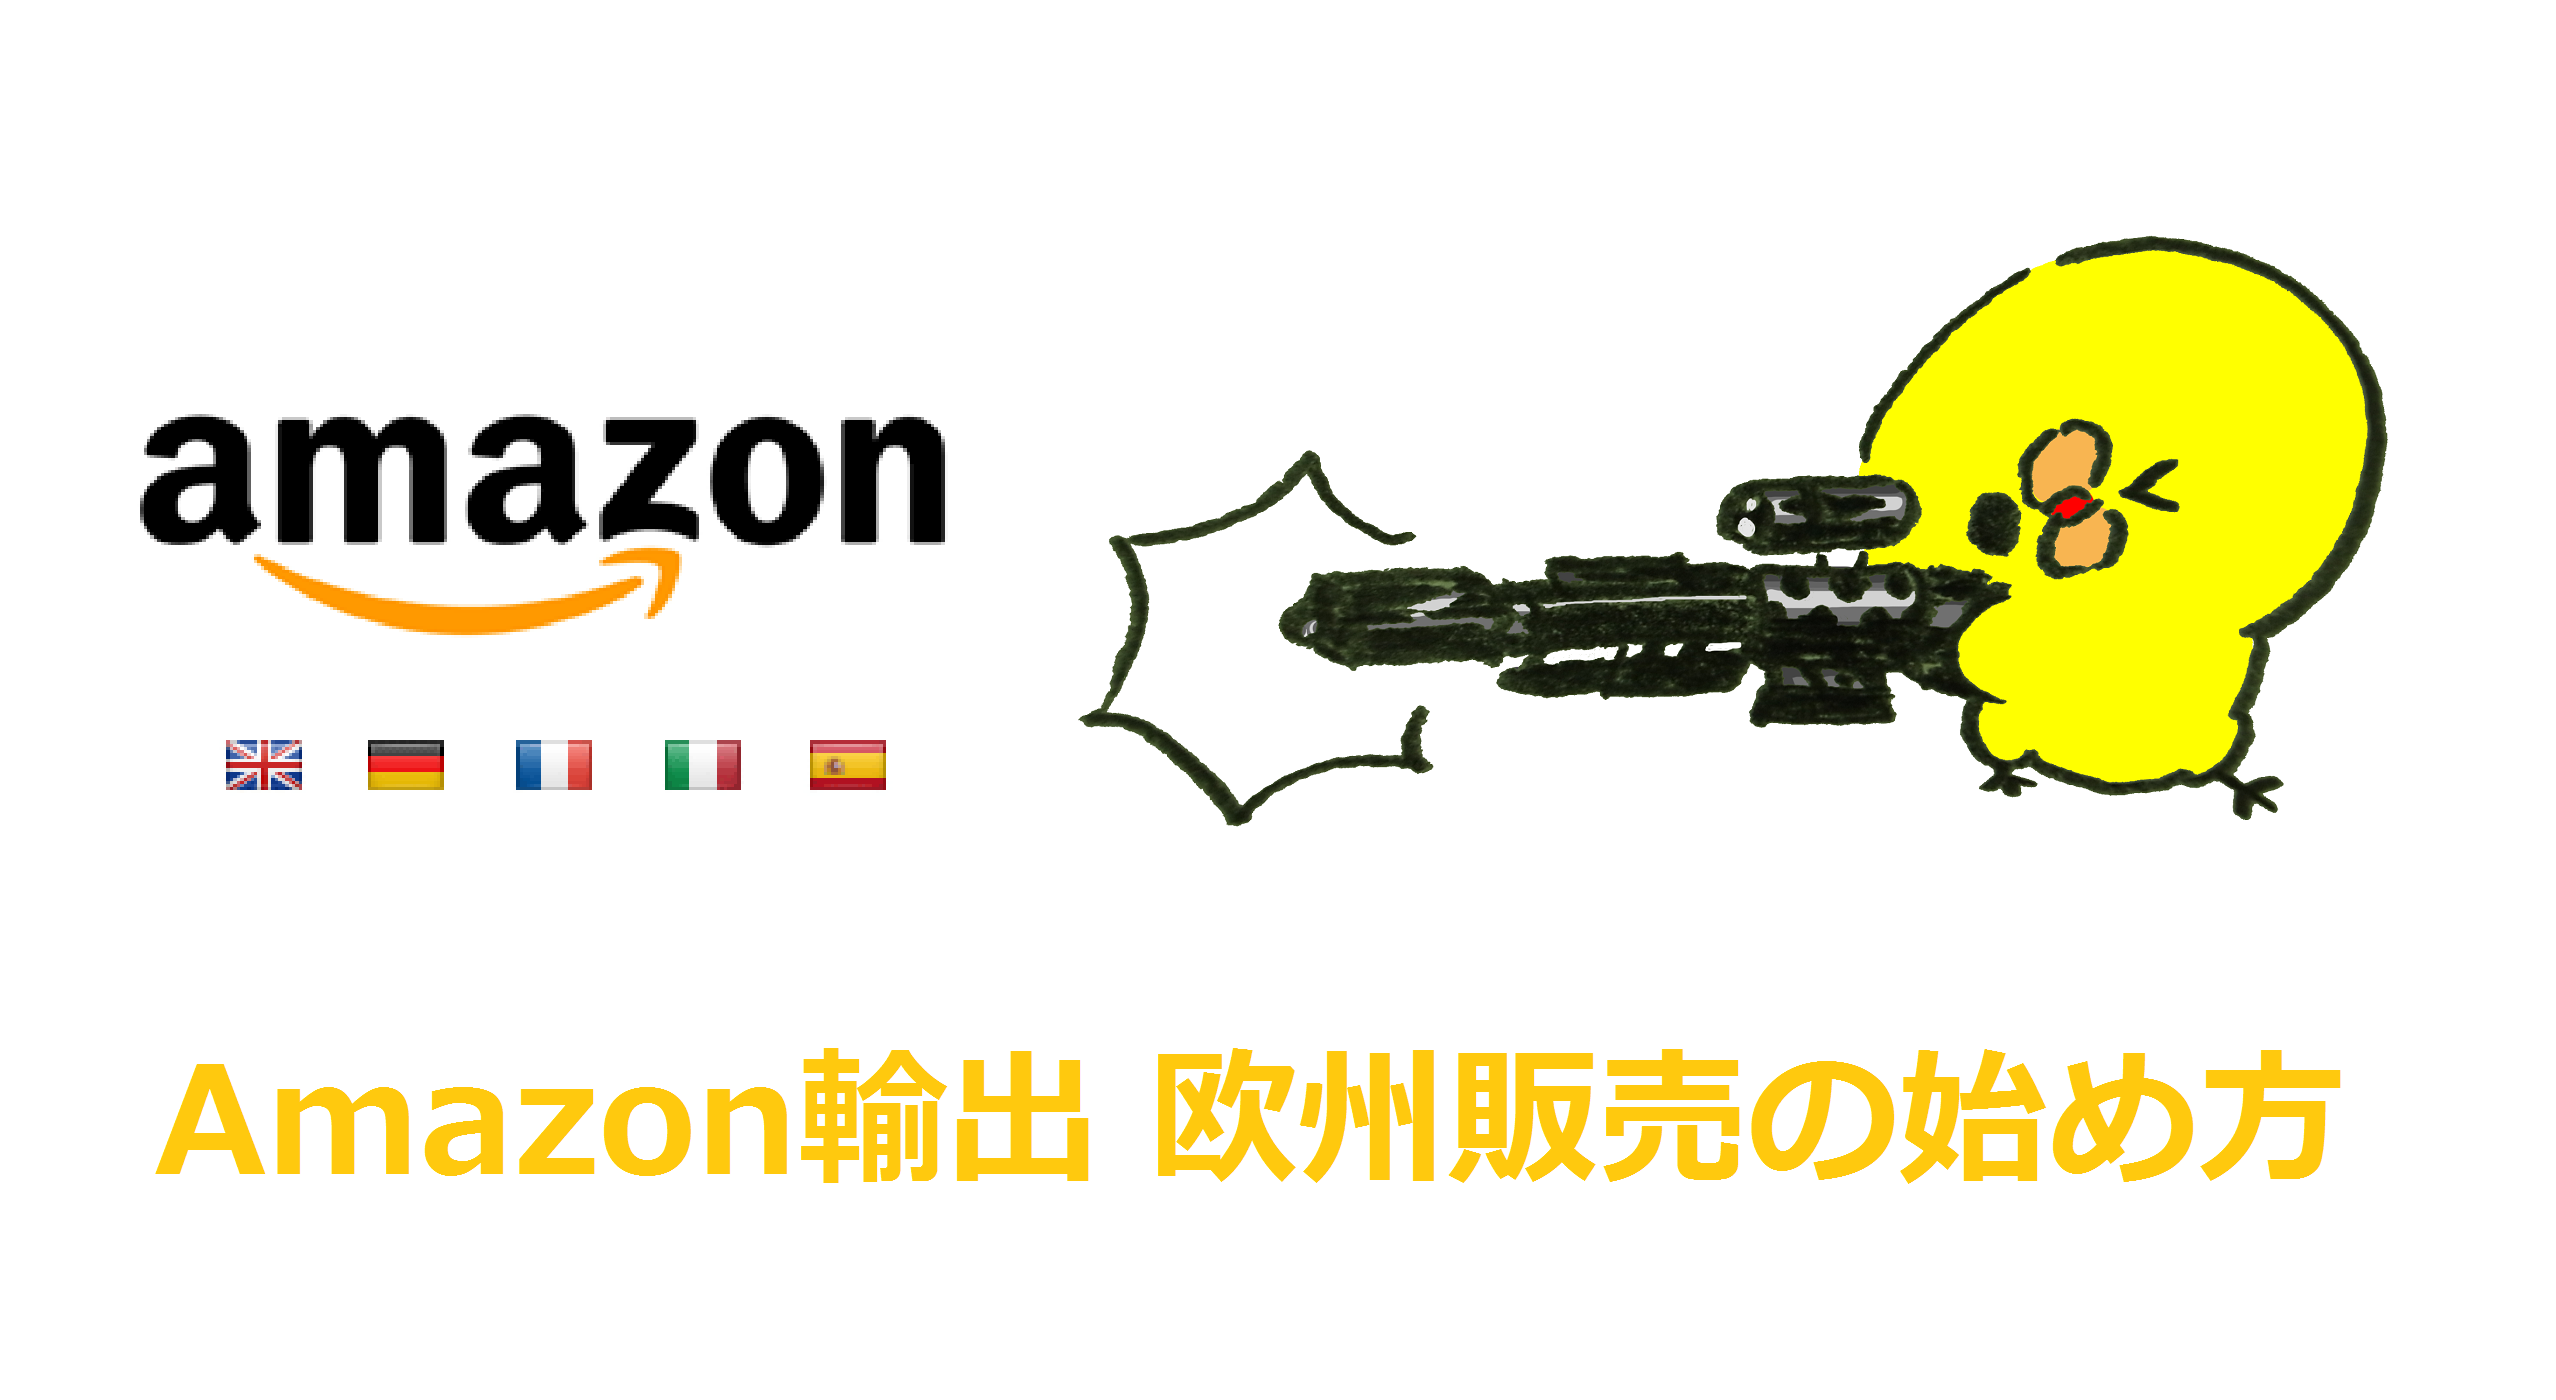 Amazon欧州(イギリス・ドイツ・フランス等)出品方法と輸出の注意点